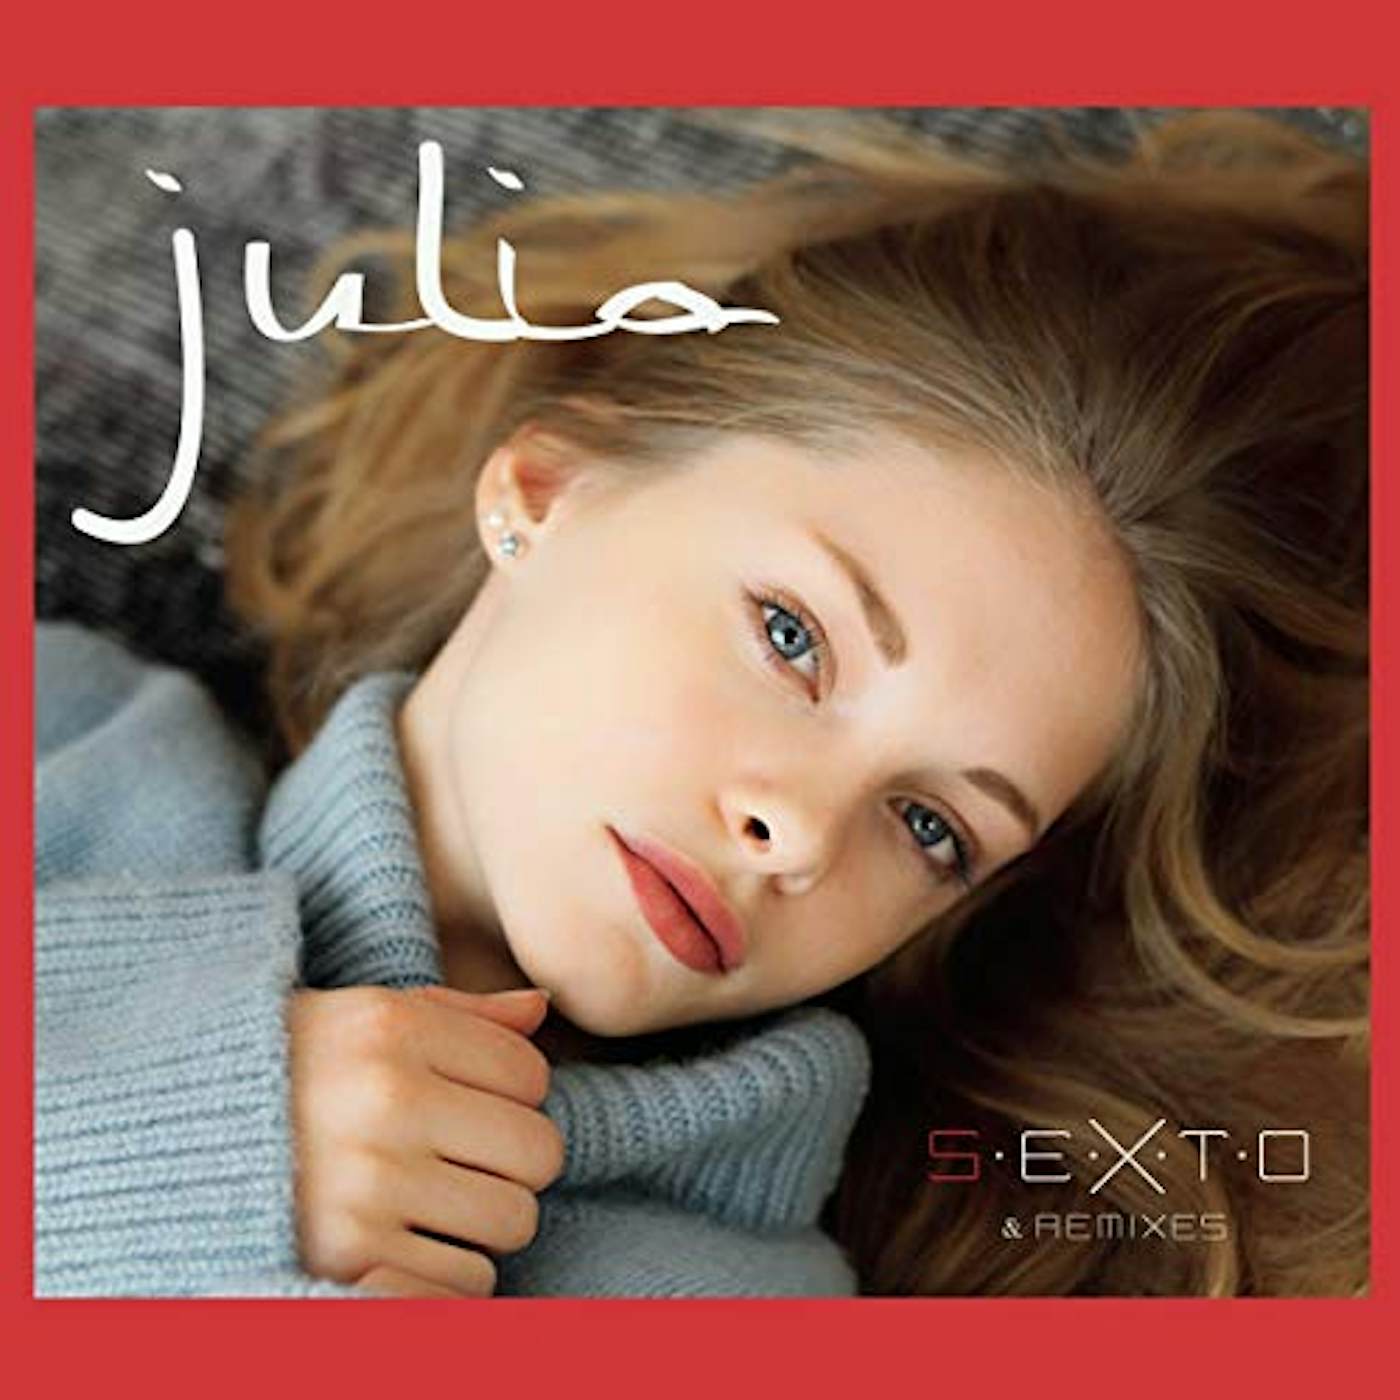 Julia S.E.X.T.O CD